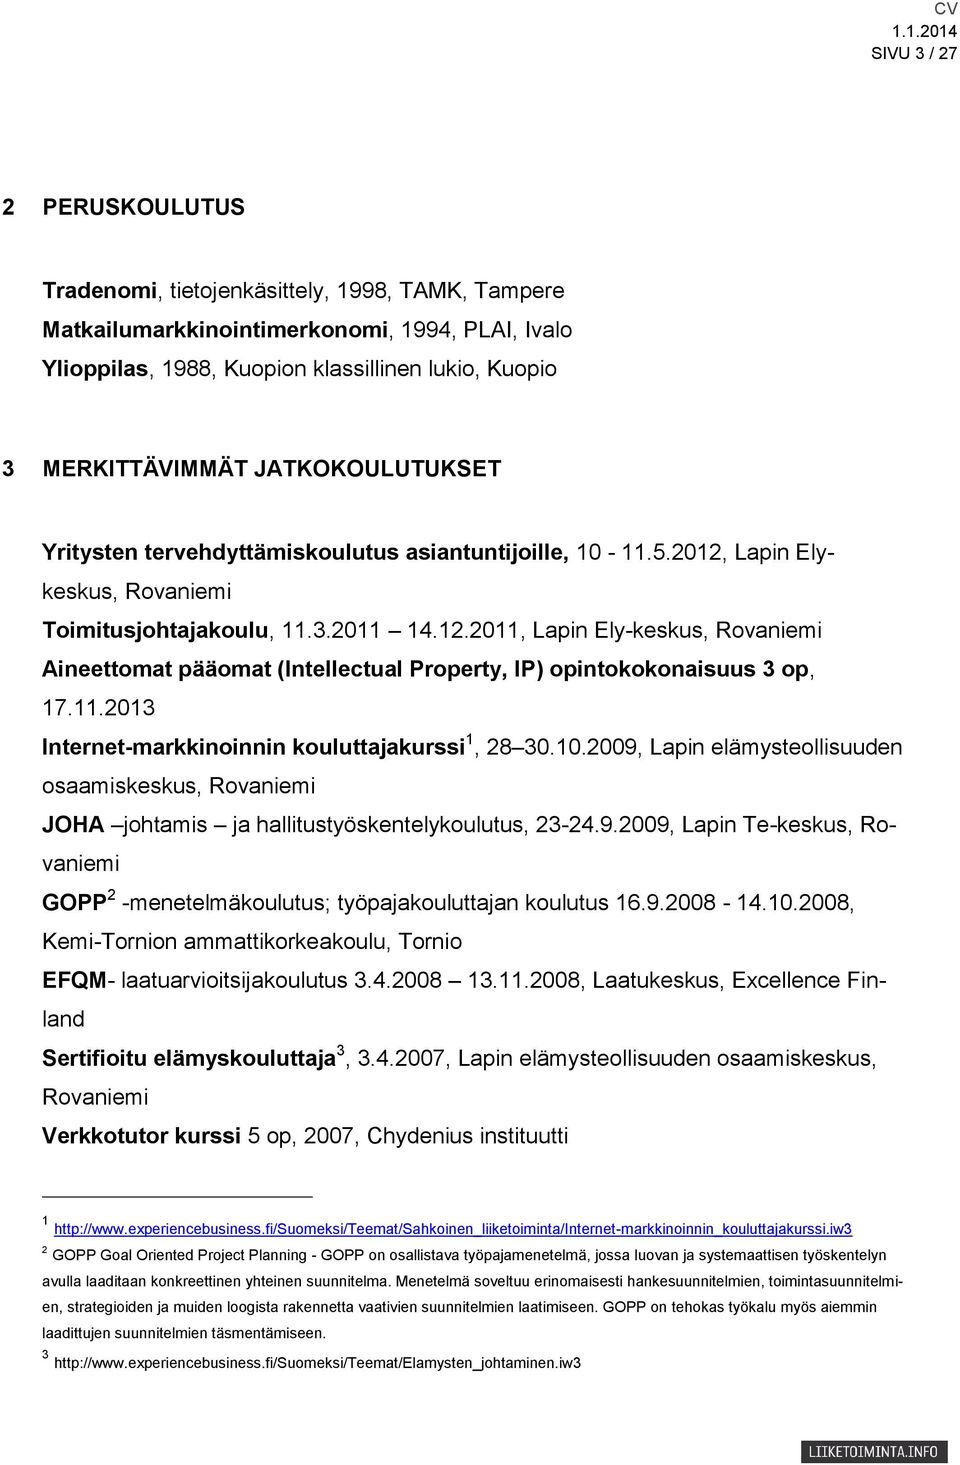 11.2013 Internet-markkinoinnin kouluttajakurssi 1, 28 30.10.2009, Lapin elämysteollisuuden osaamiskeskus, Rovaniemi JOHA johtamis ja hallitustyöskentelykoulutus, 23-24.9.2009, Lapin Te-keskus, Rovaniemi GOPP 2 -menetelmäkoulutus; työpajakouluttajan koulutus 16.